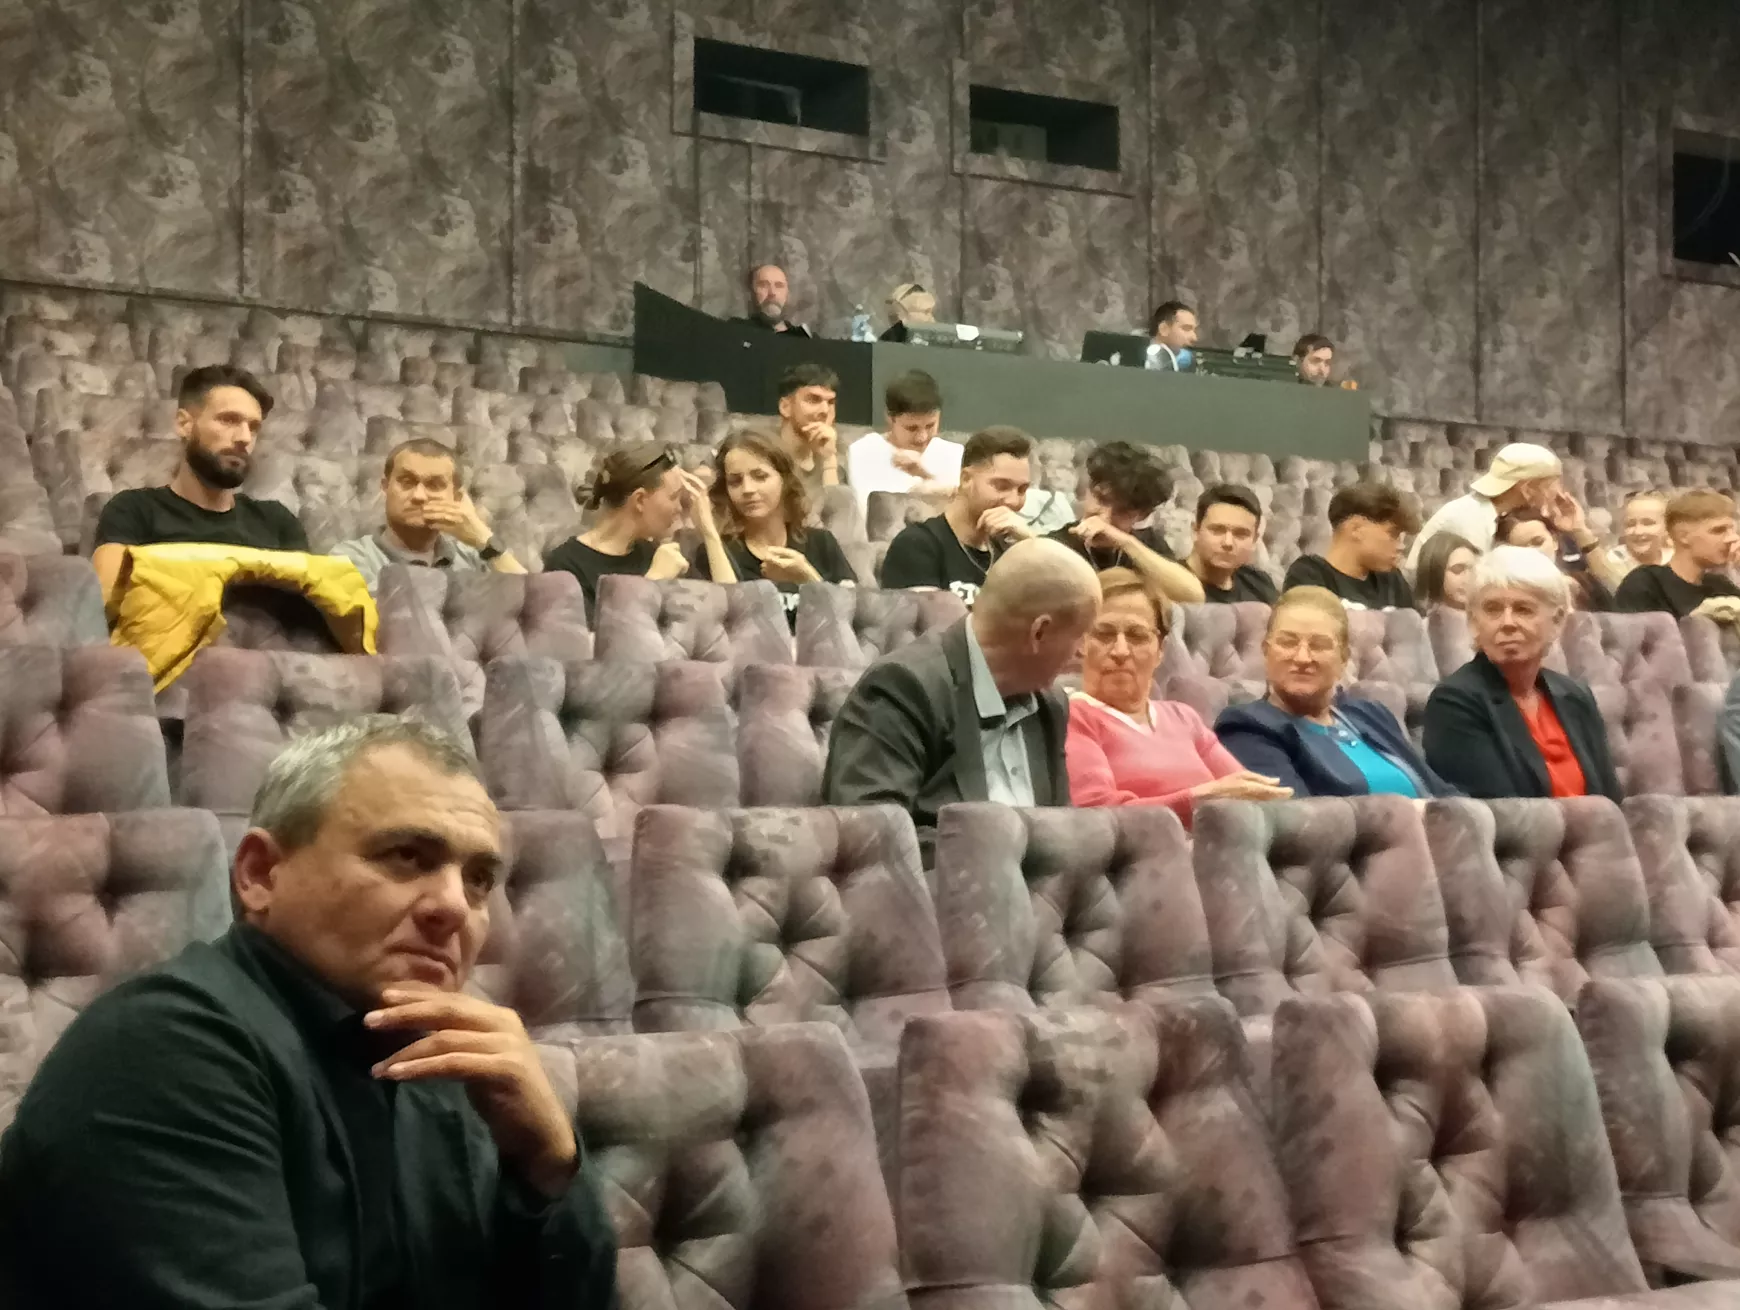 Kacajt fakasztó Rejtő-esttel indult az 59. Jókai Napok országos színjátszó fesztivál - KÉPEKKEL